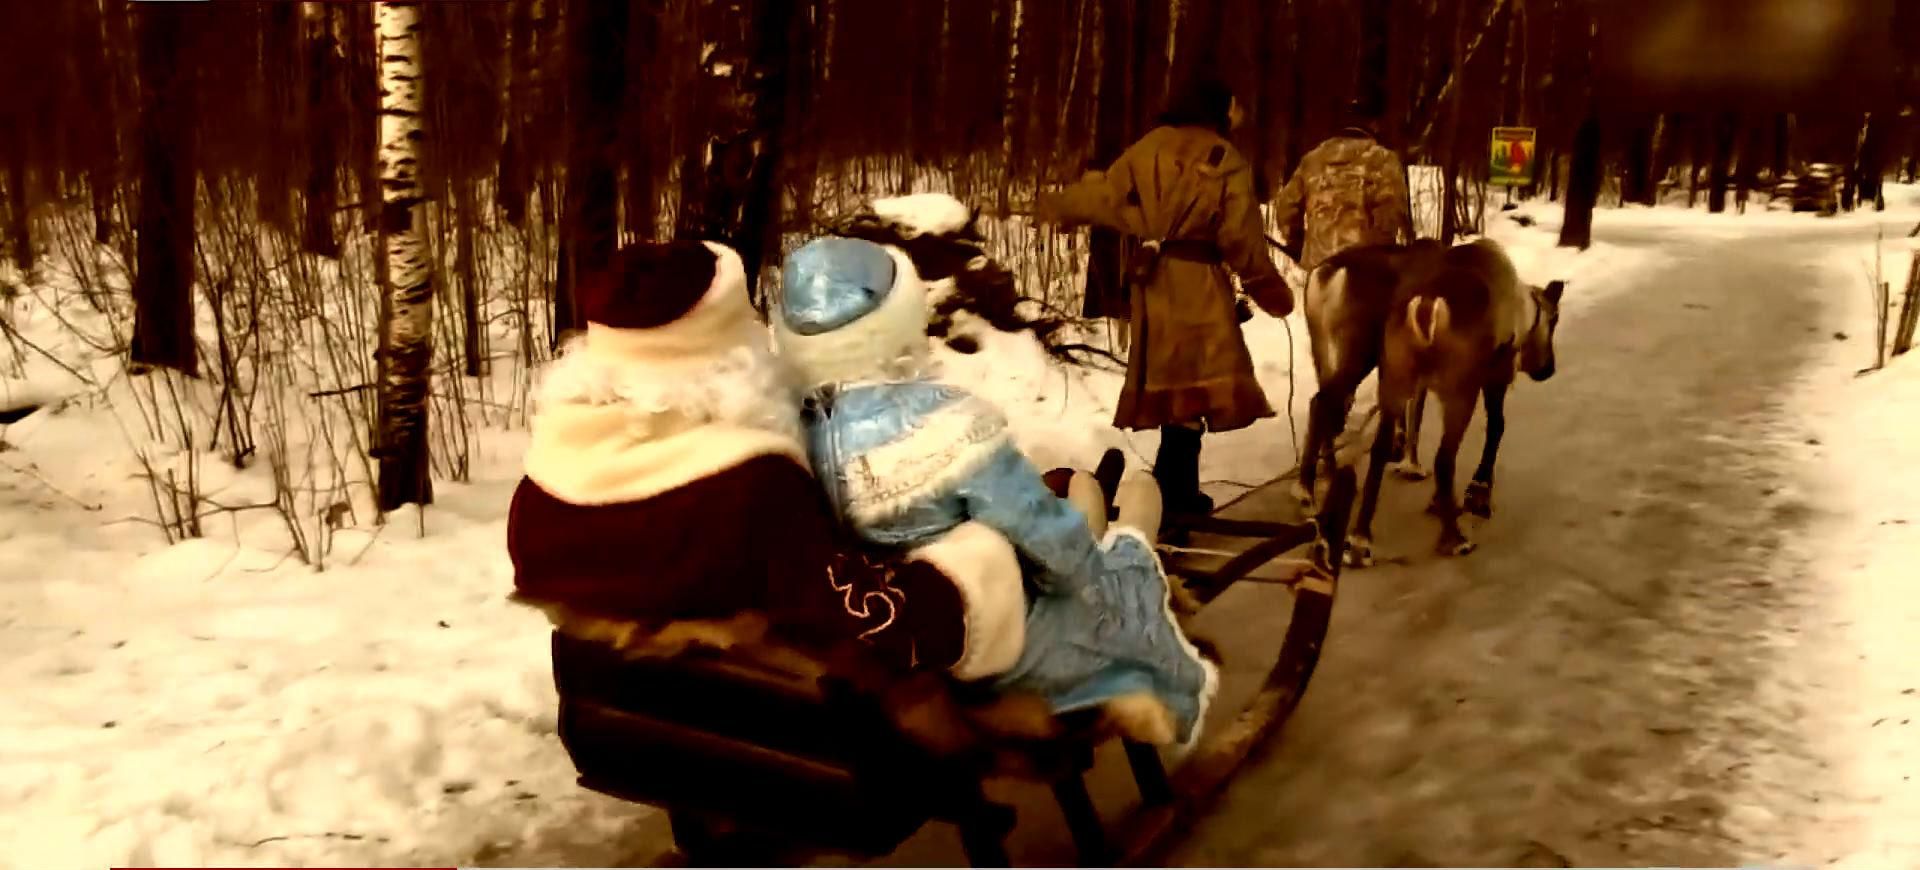 Российского Деда Мороза ограбили — украли оленя